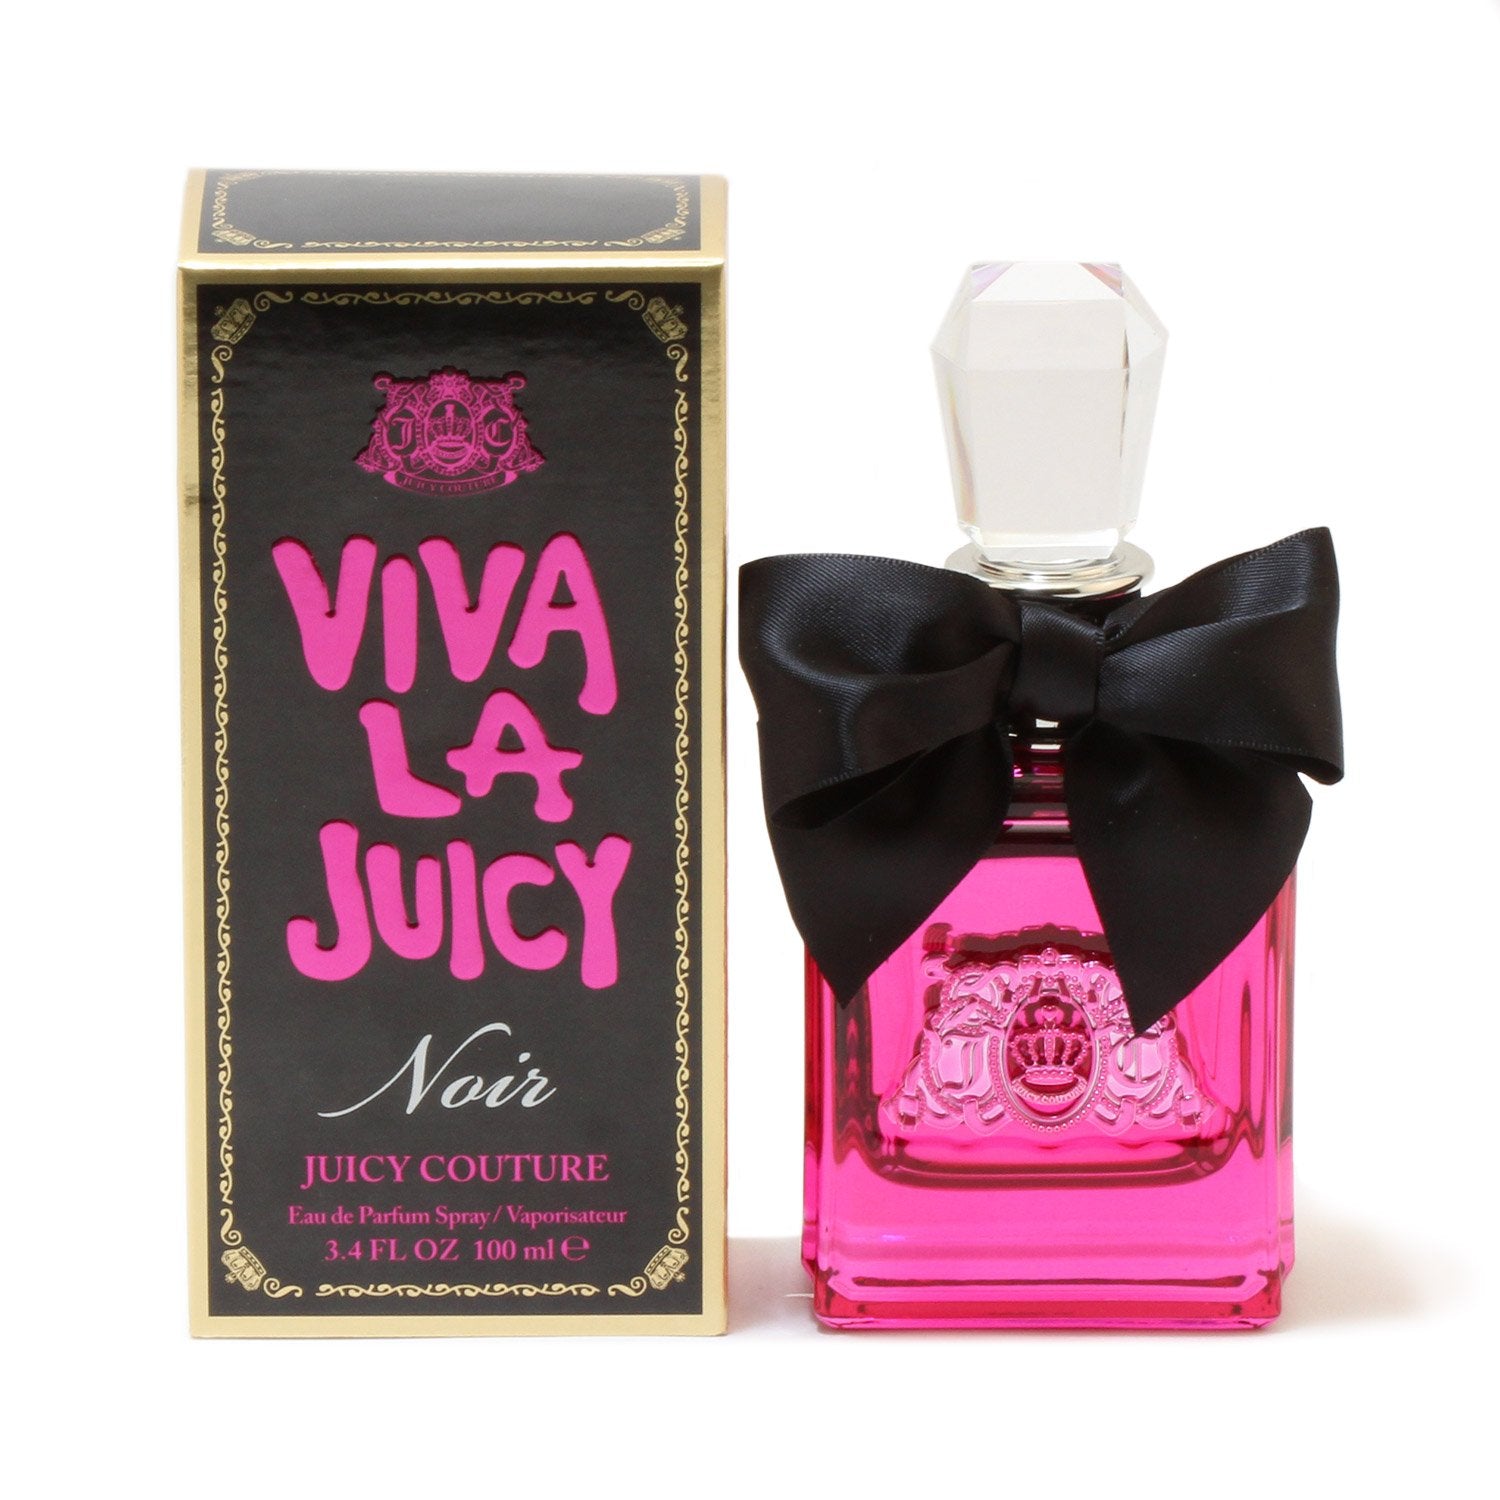 Perfume - VIVA LA JUICY NOIR FOR WOMEN - EAU DE PARFUM SPRAY, 3.4 OZ